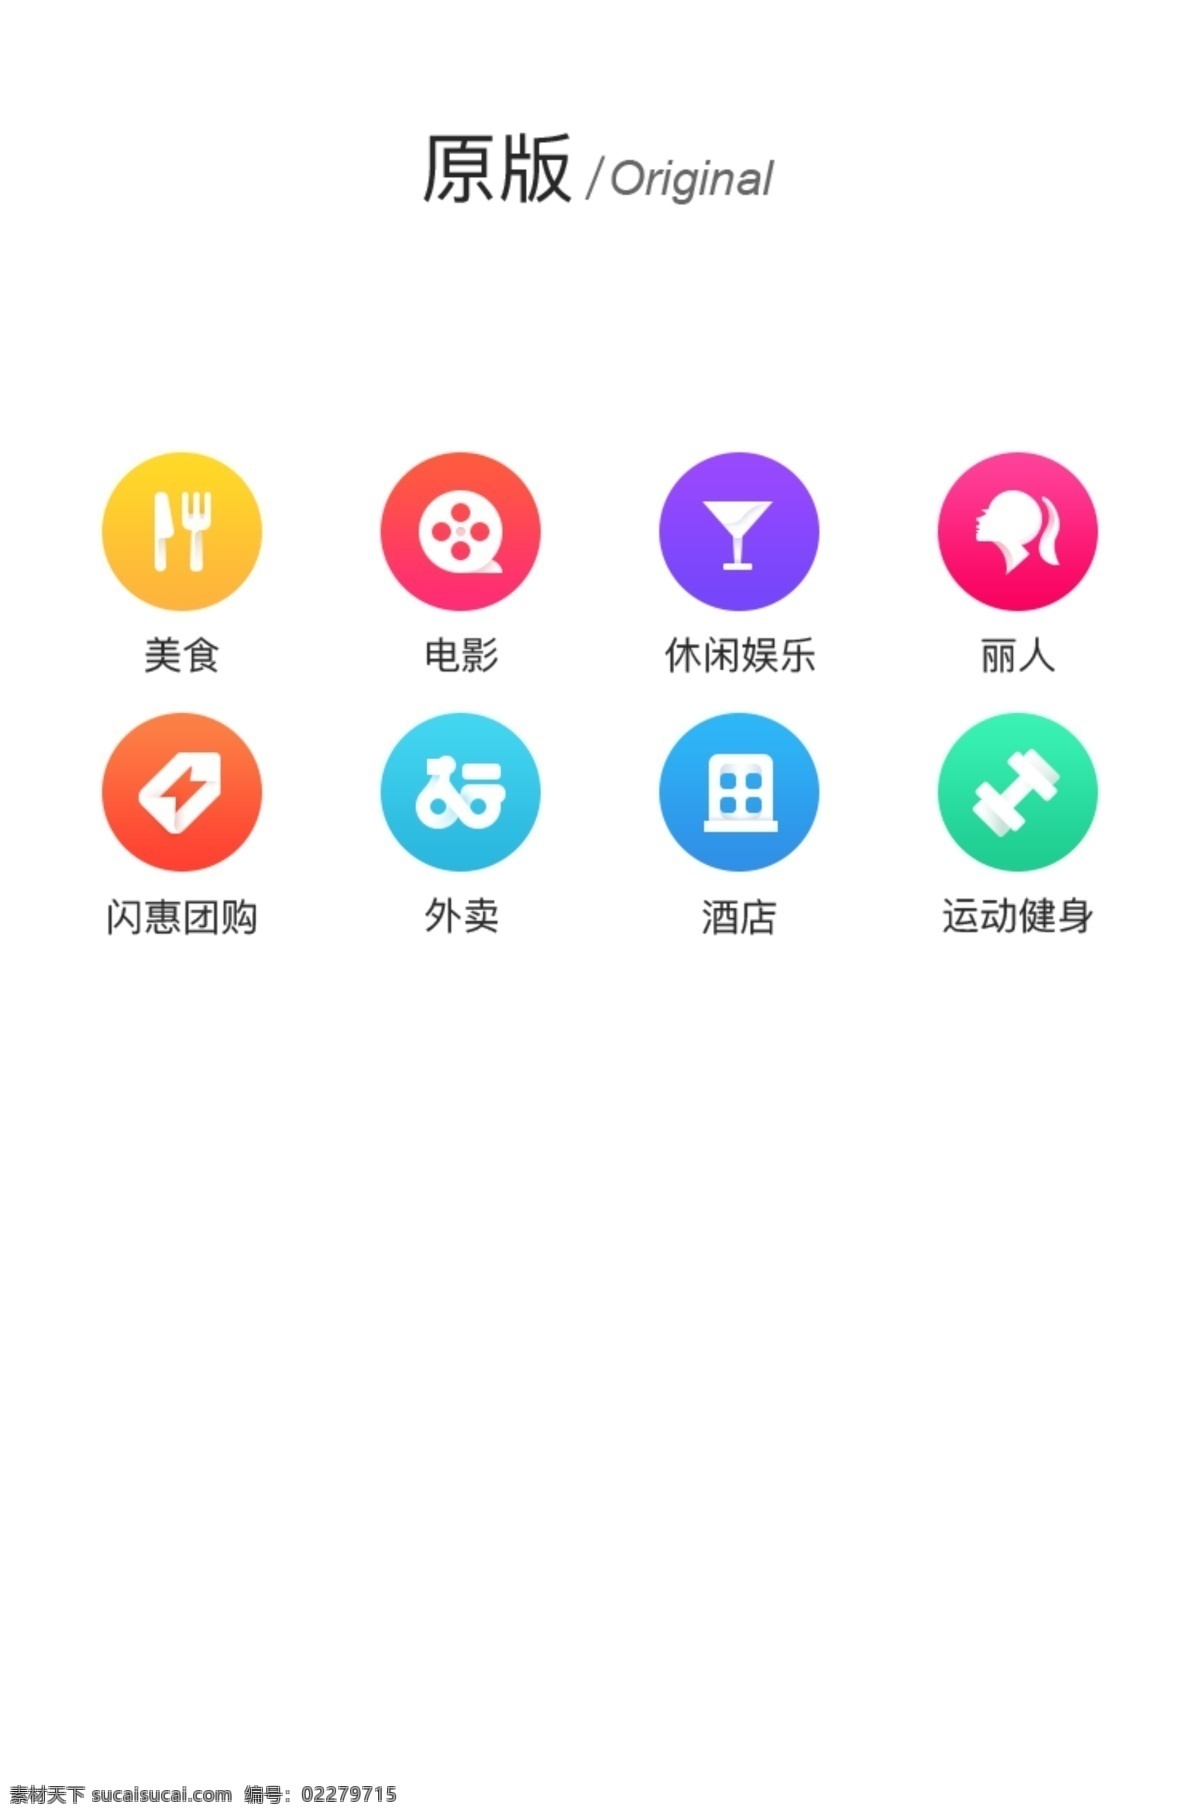 社交 软件 icon 图标 商用 元素 彩色 ui 手机 娱乐 渐变 评价 团购 亮色